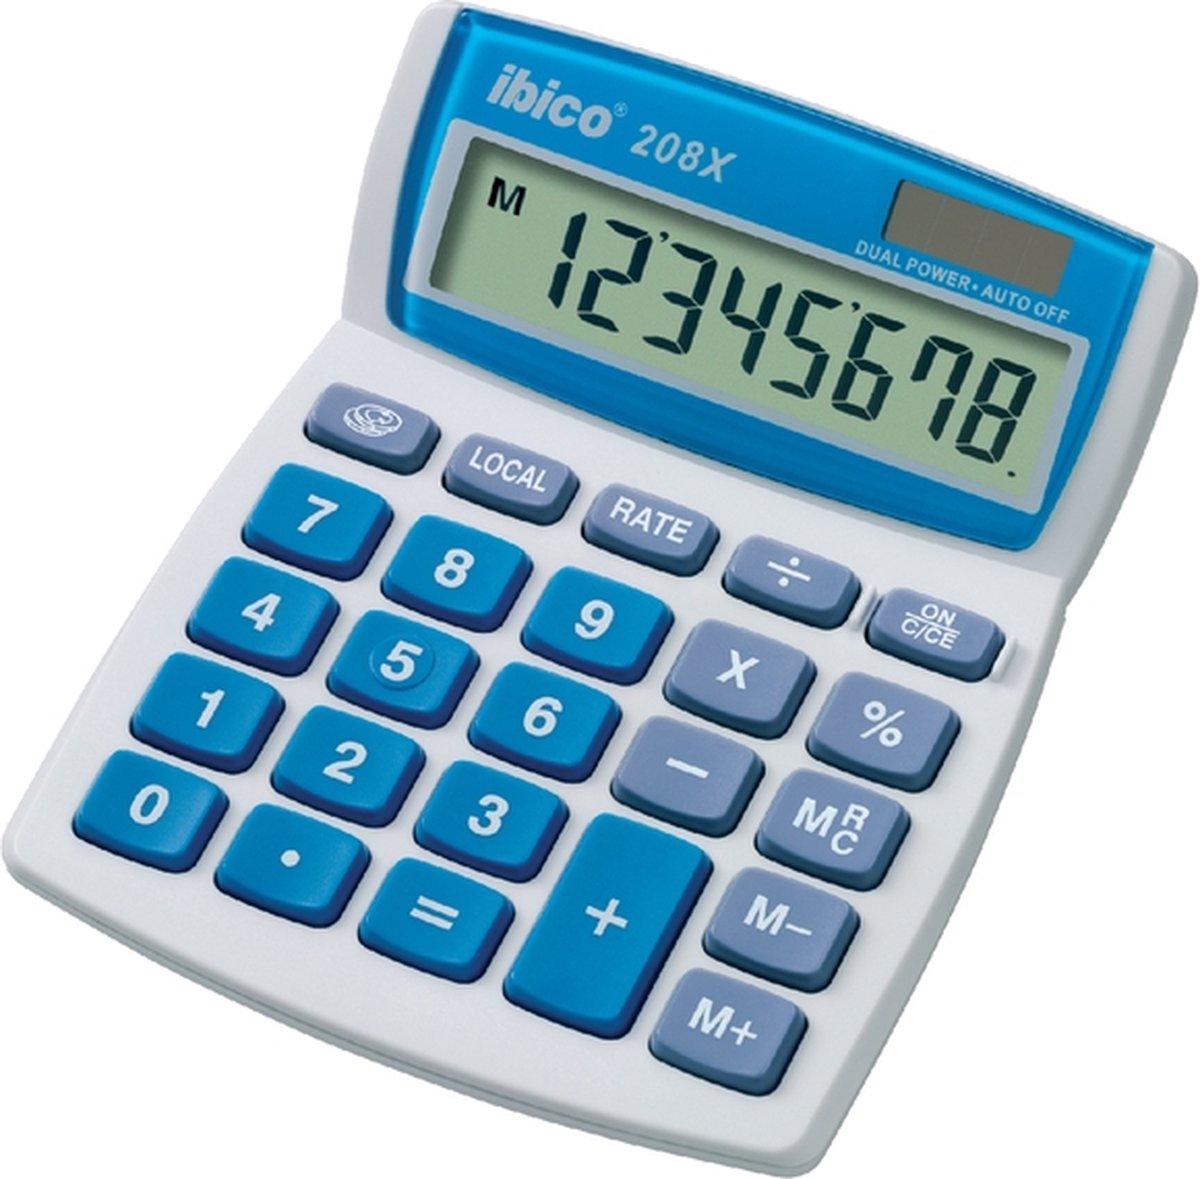 Rexel 208X calculator Desktop Basisrekenmachine